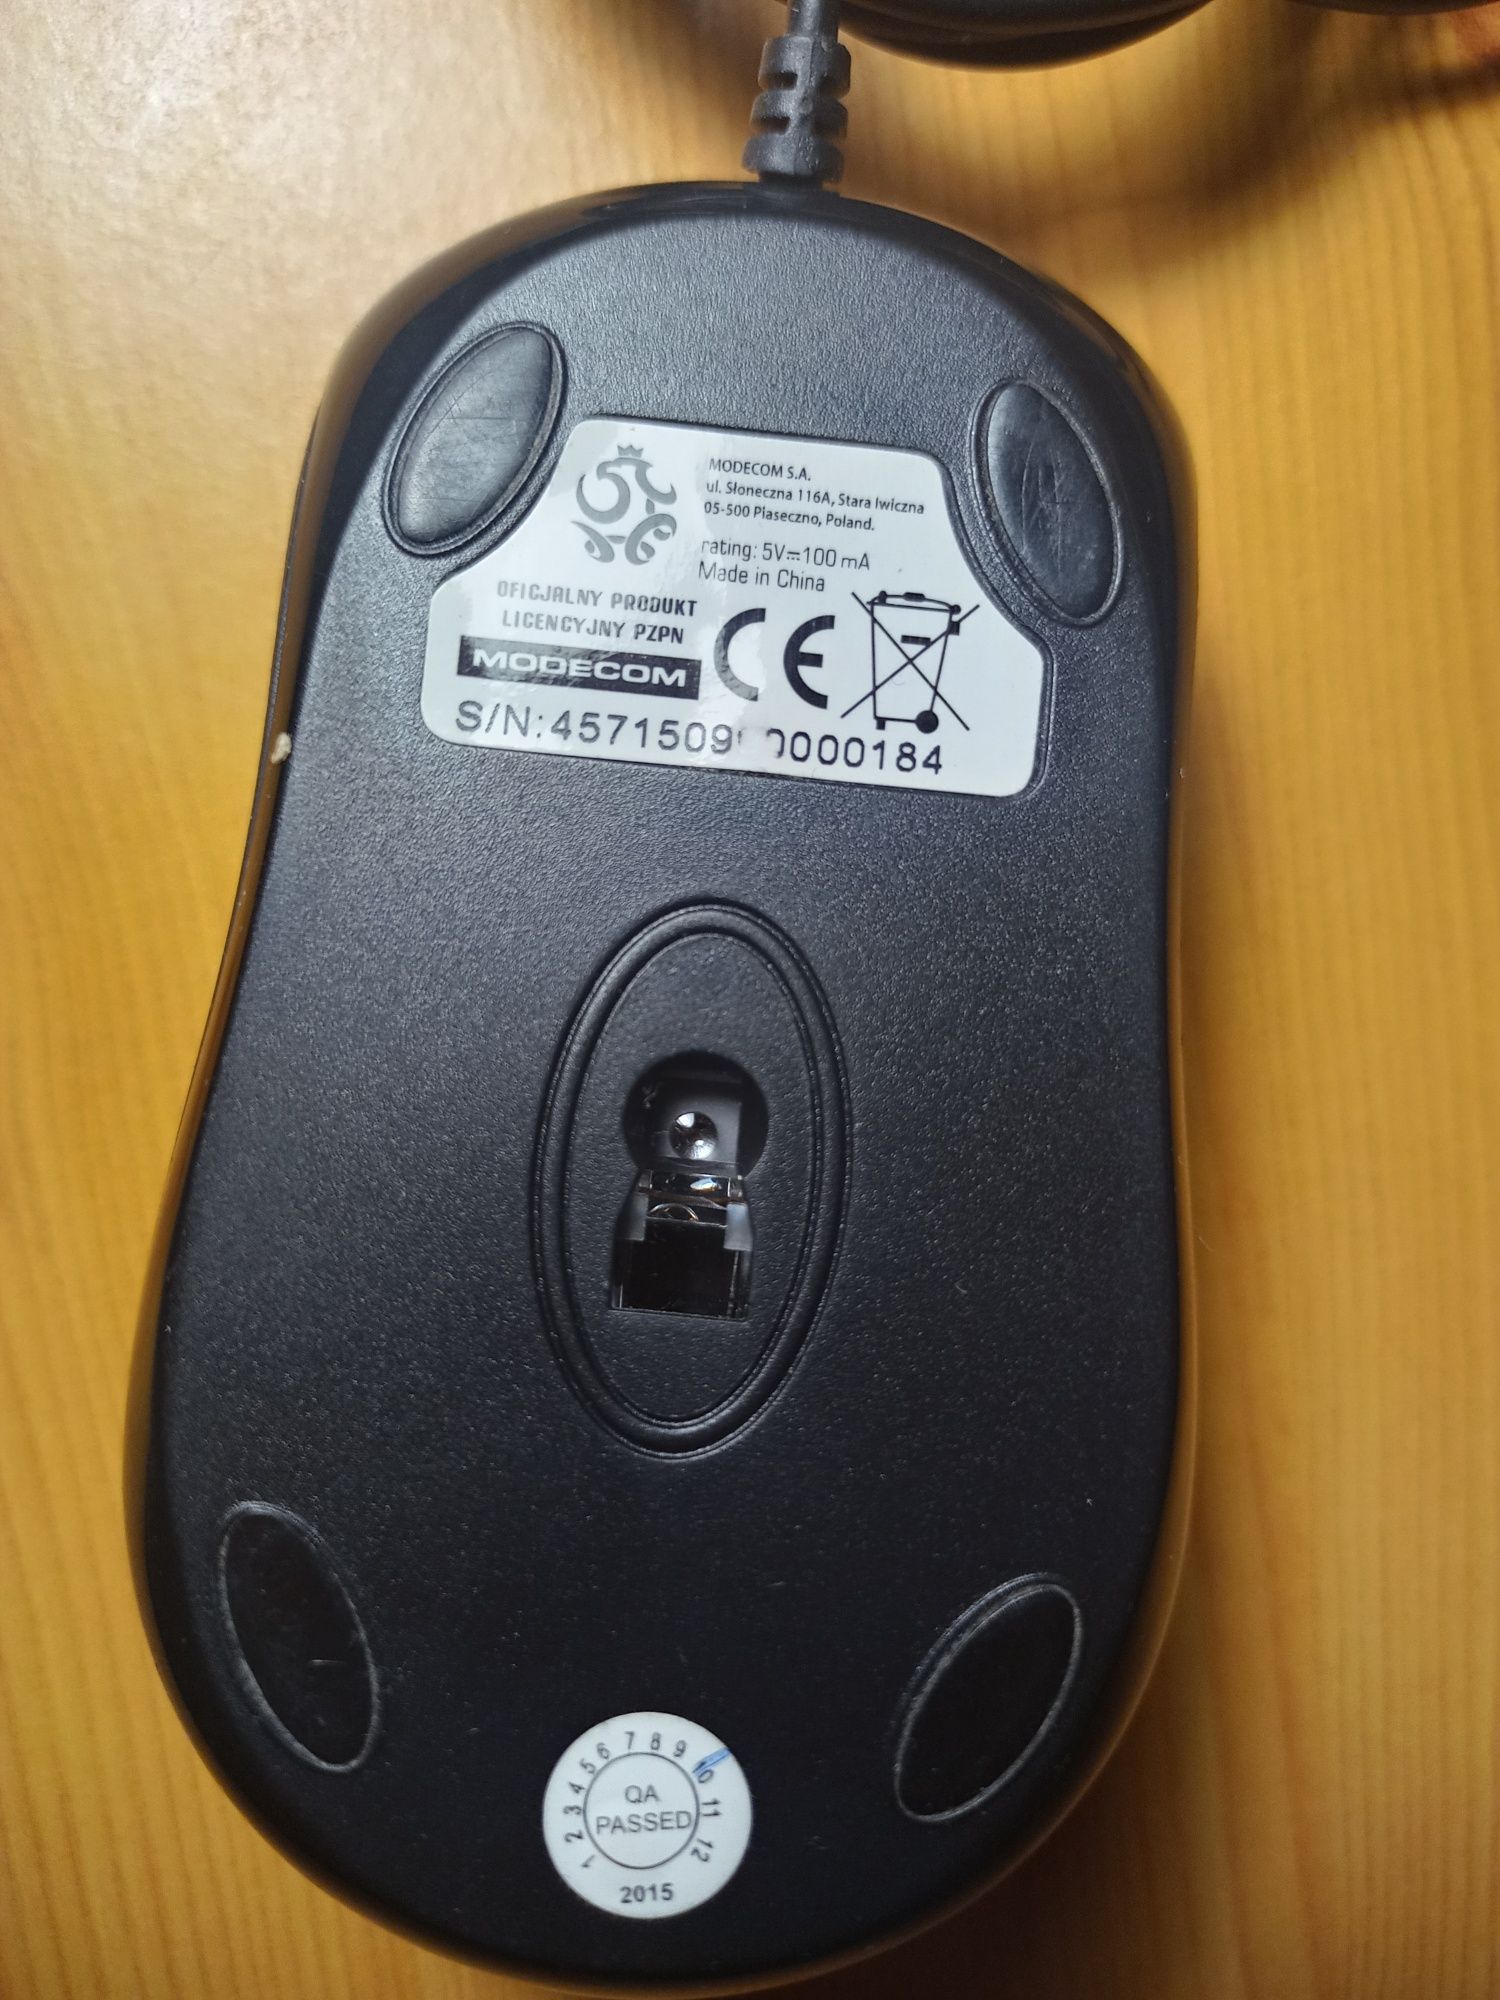 Mysz Modecom MC-M4 Oficjalny Produkt Licencyjny PZPN